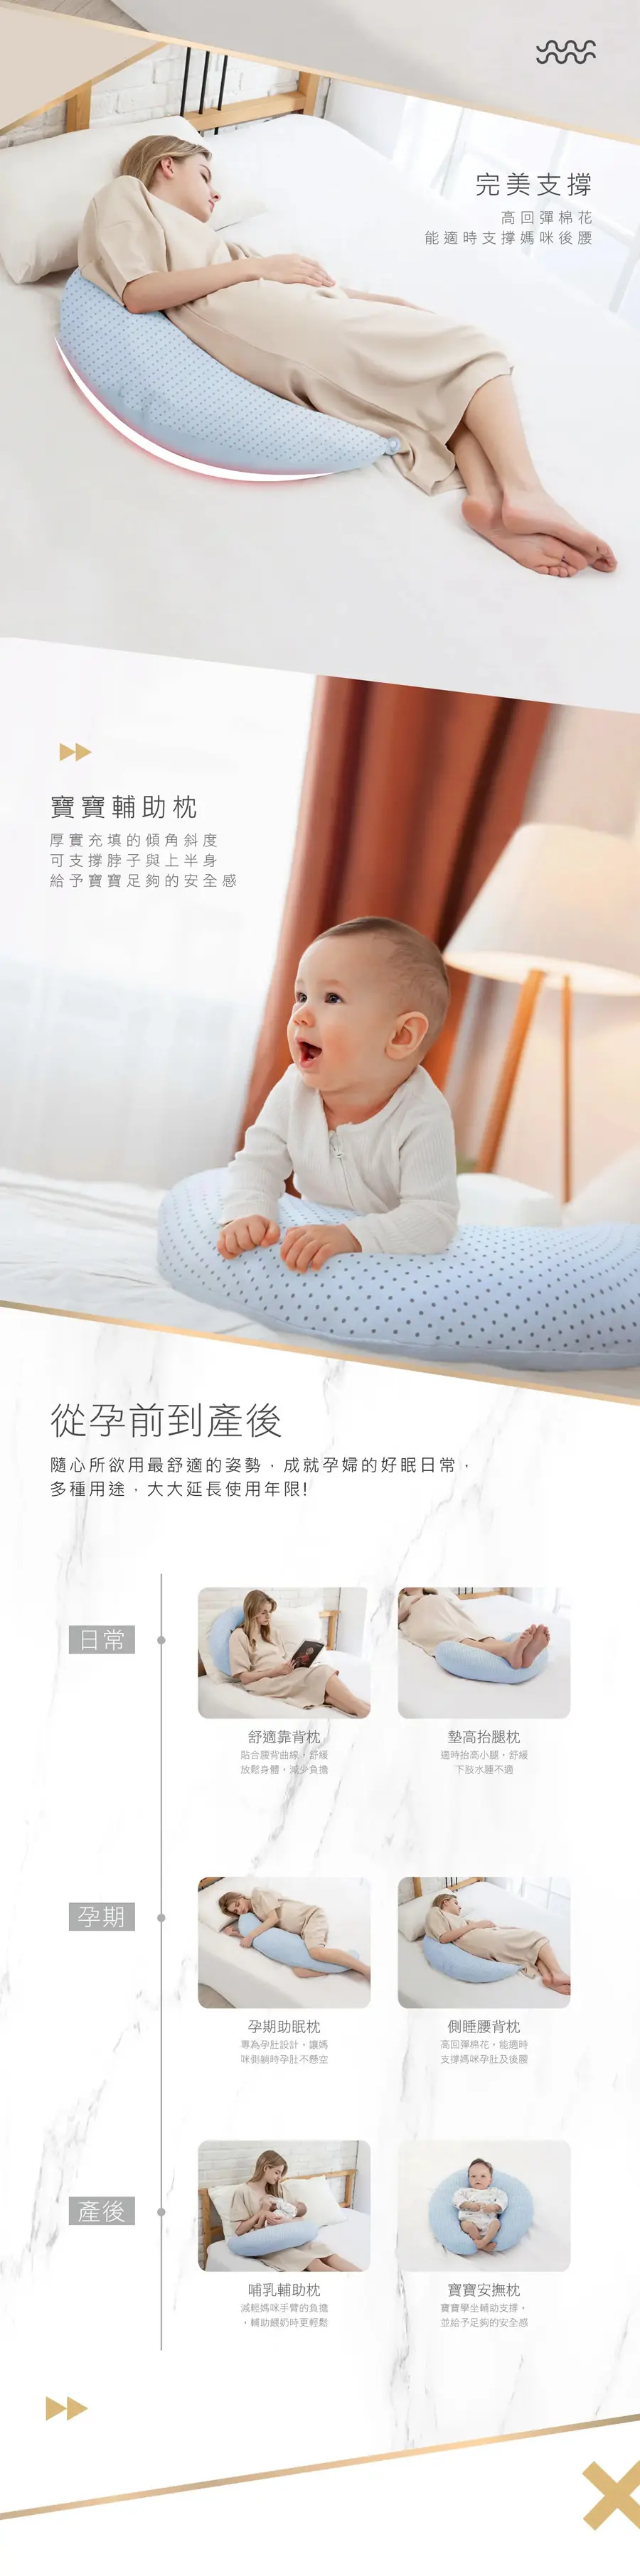 KuKu Duck 授乳月亮枕(毛巾+棉质布料)